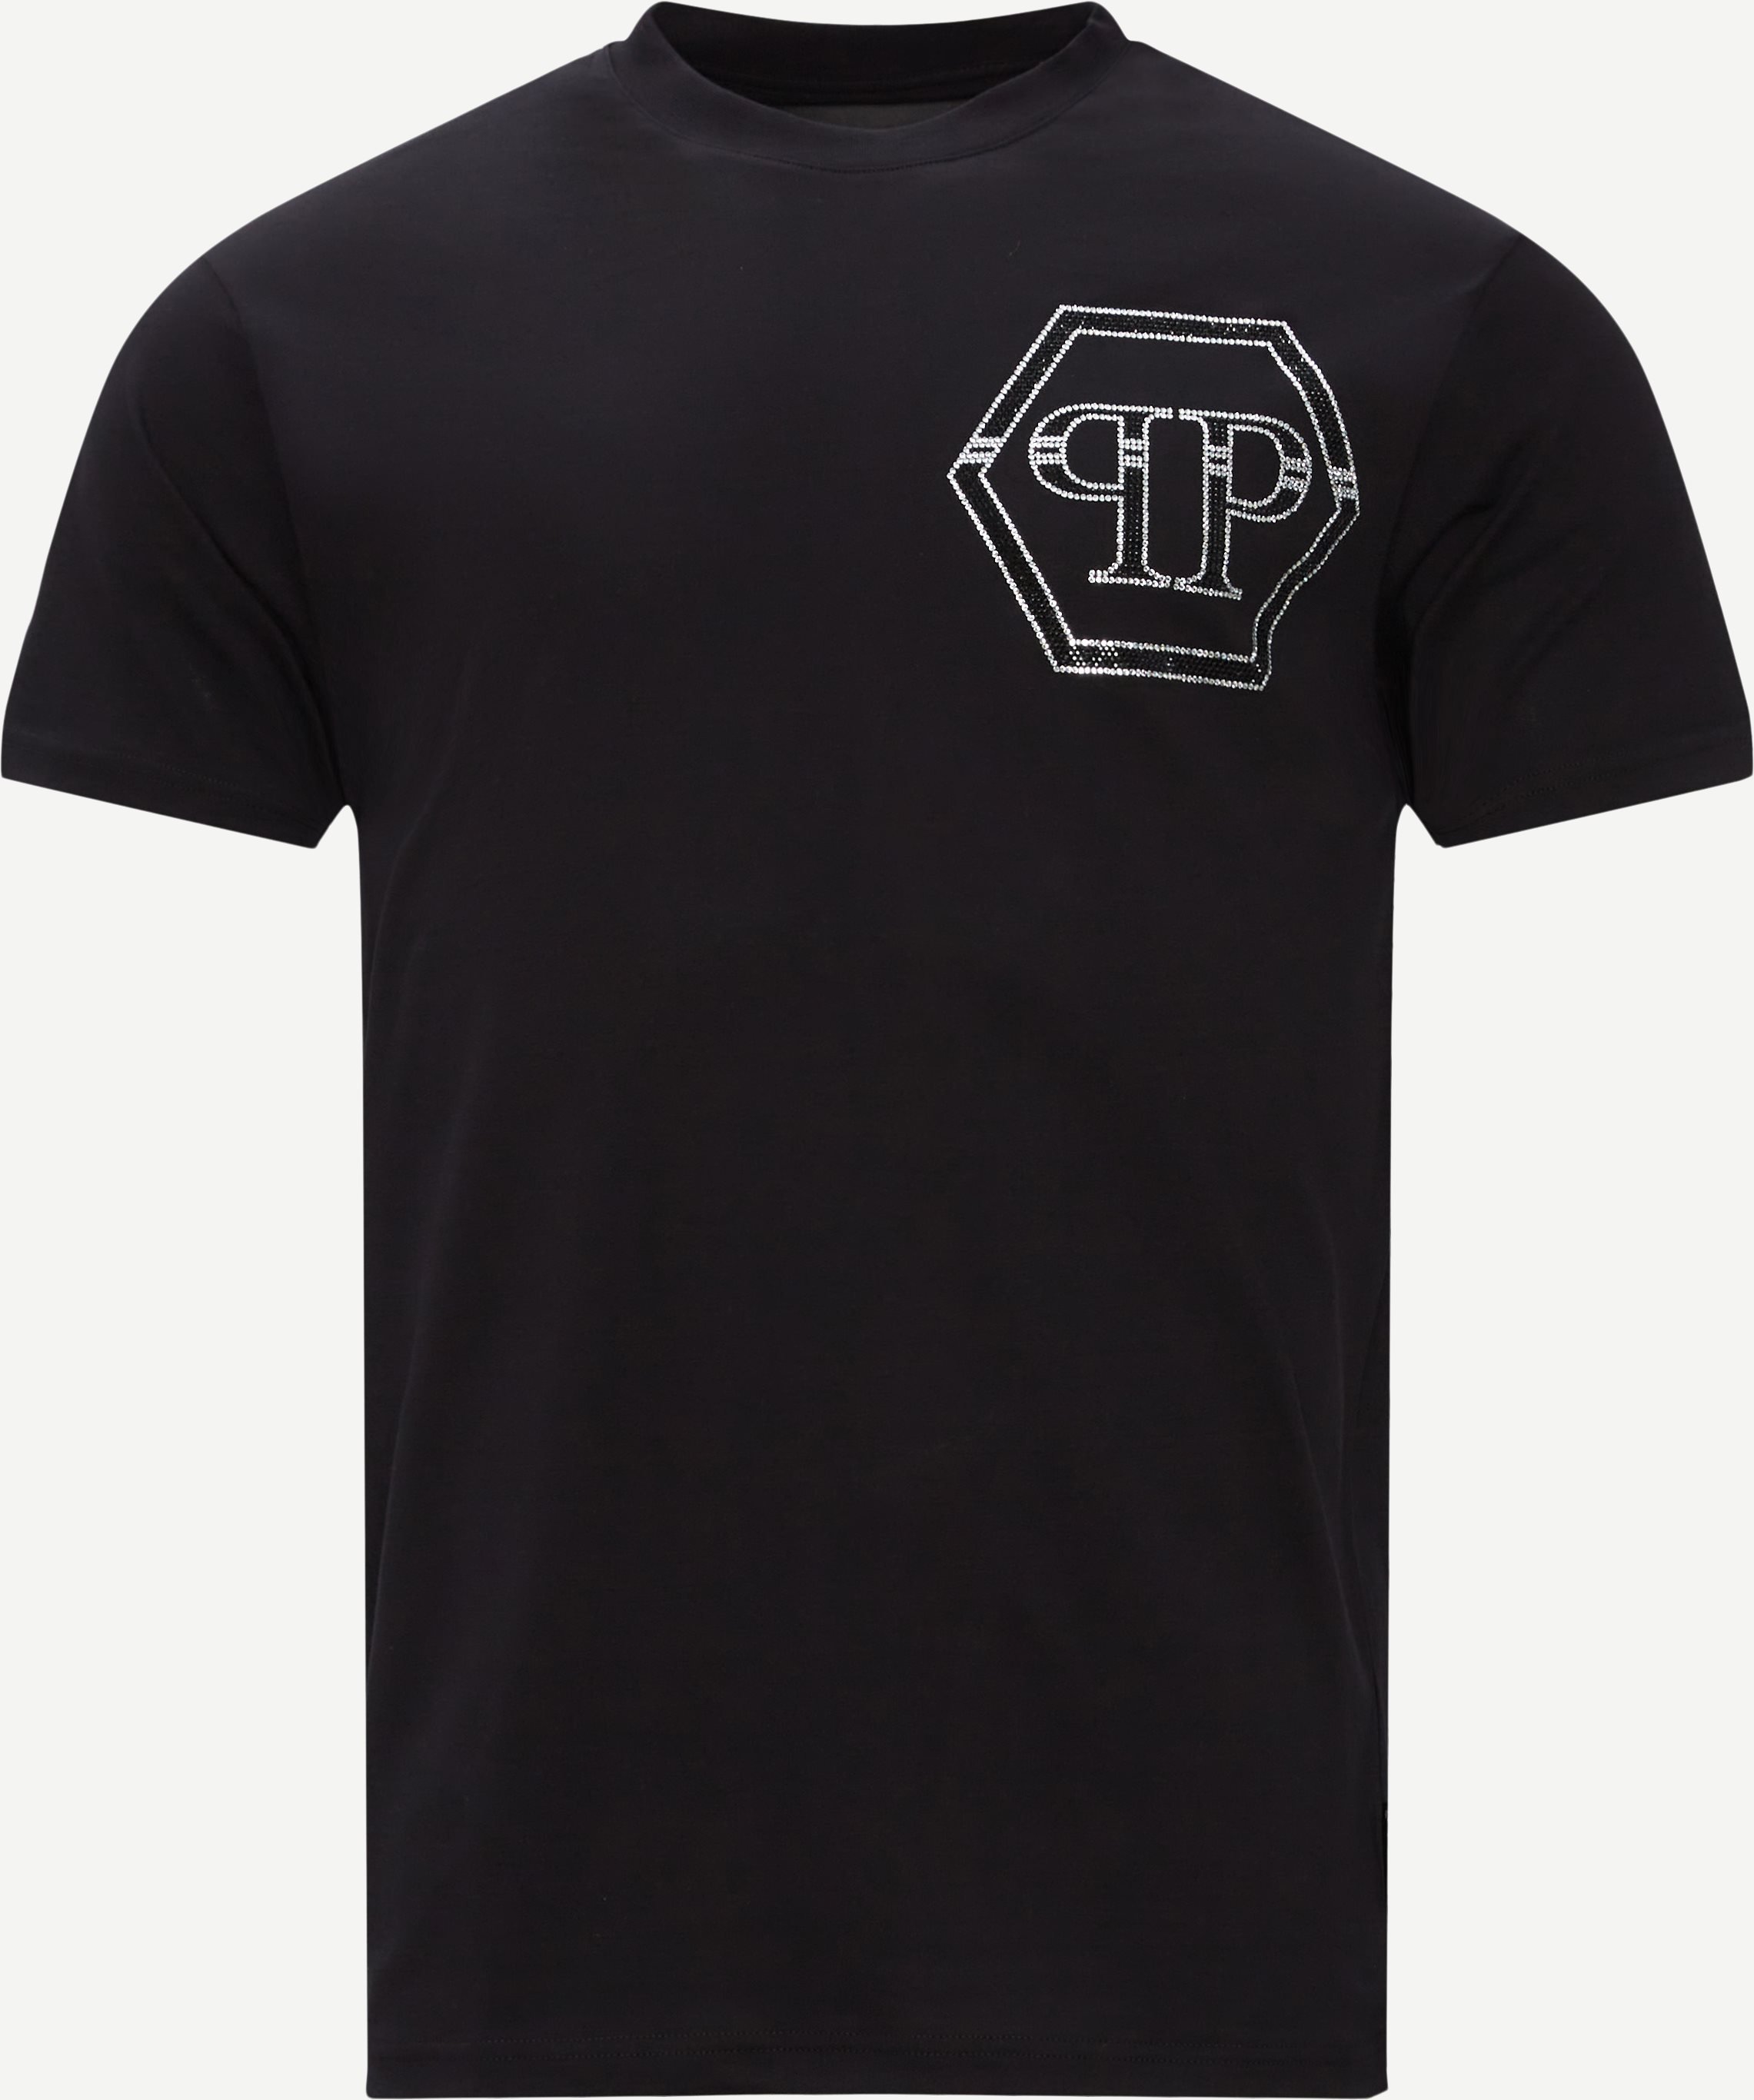 MTK5460 Hexagon Tee - T-shirts - Regular fit - Svart